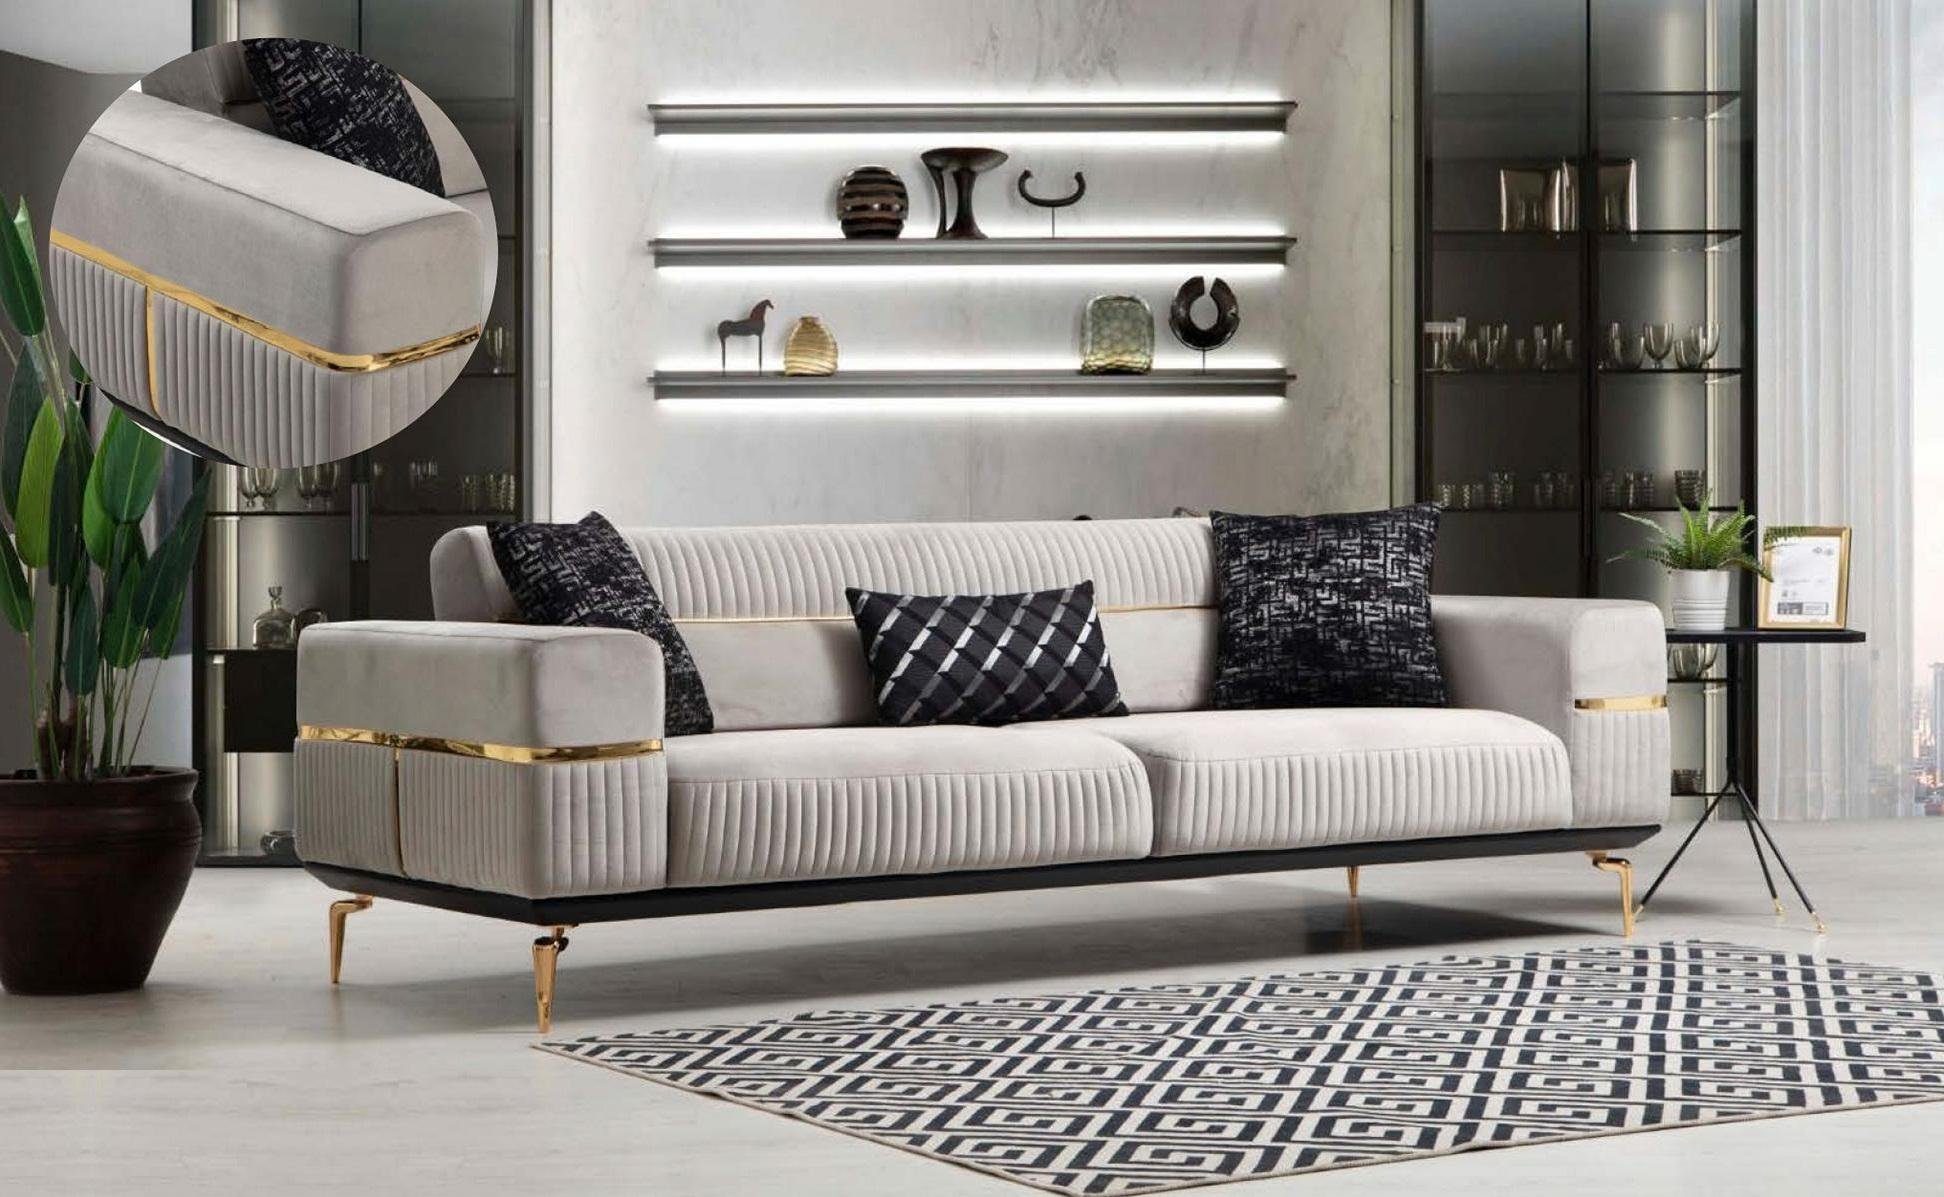 JVmoebel Sofa Weißer Dreisitzer moderne Möbel Luxus Couch Neu Edelstahl, Made in Europe